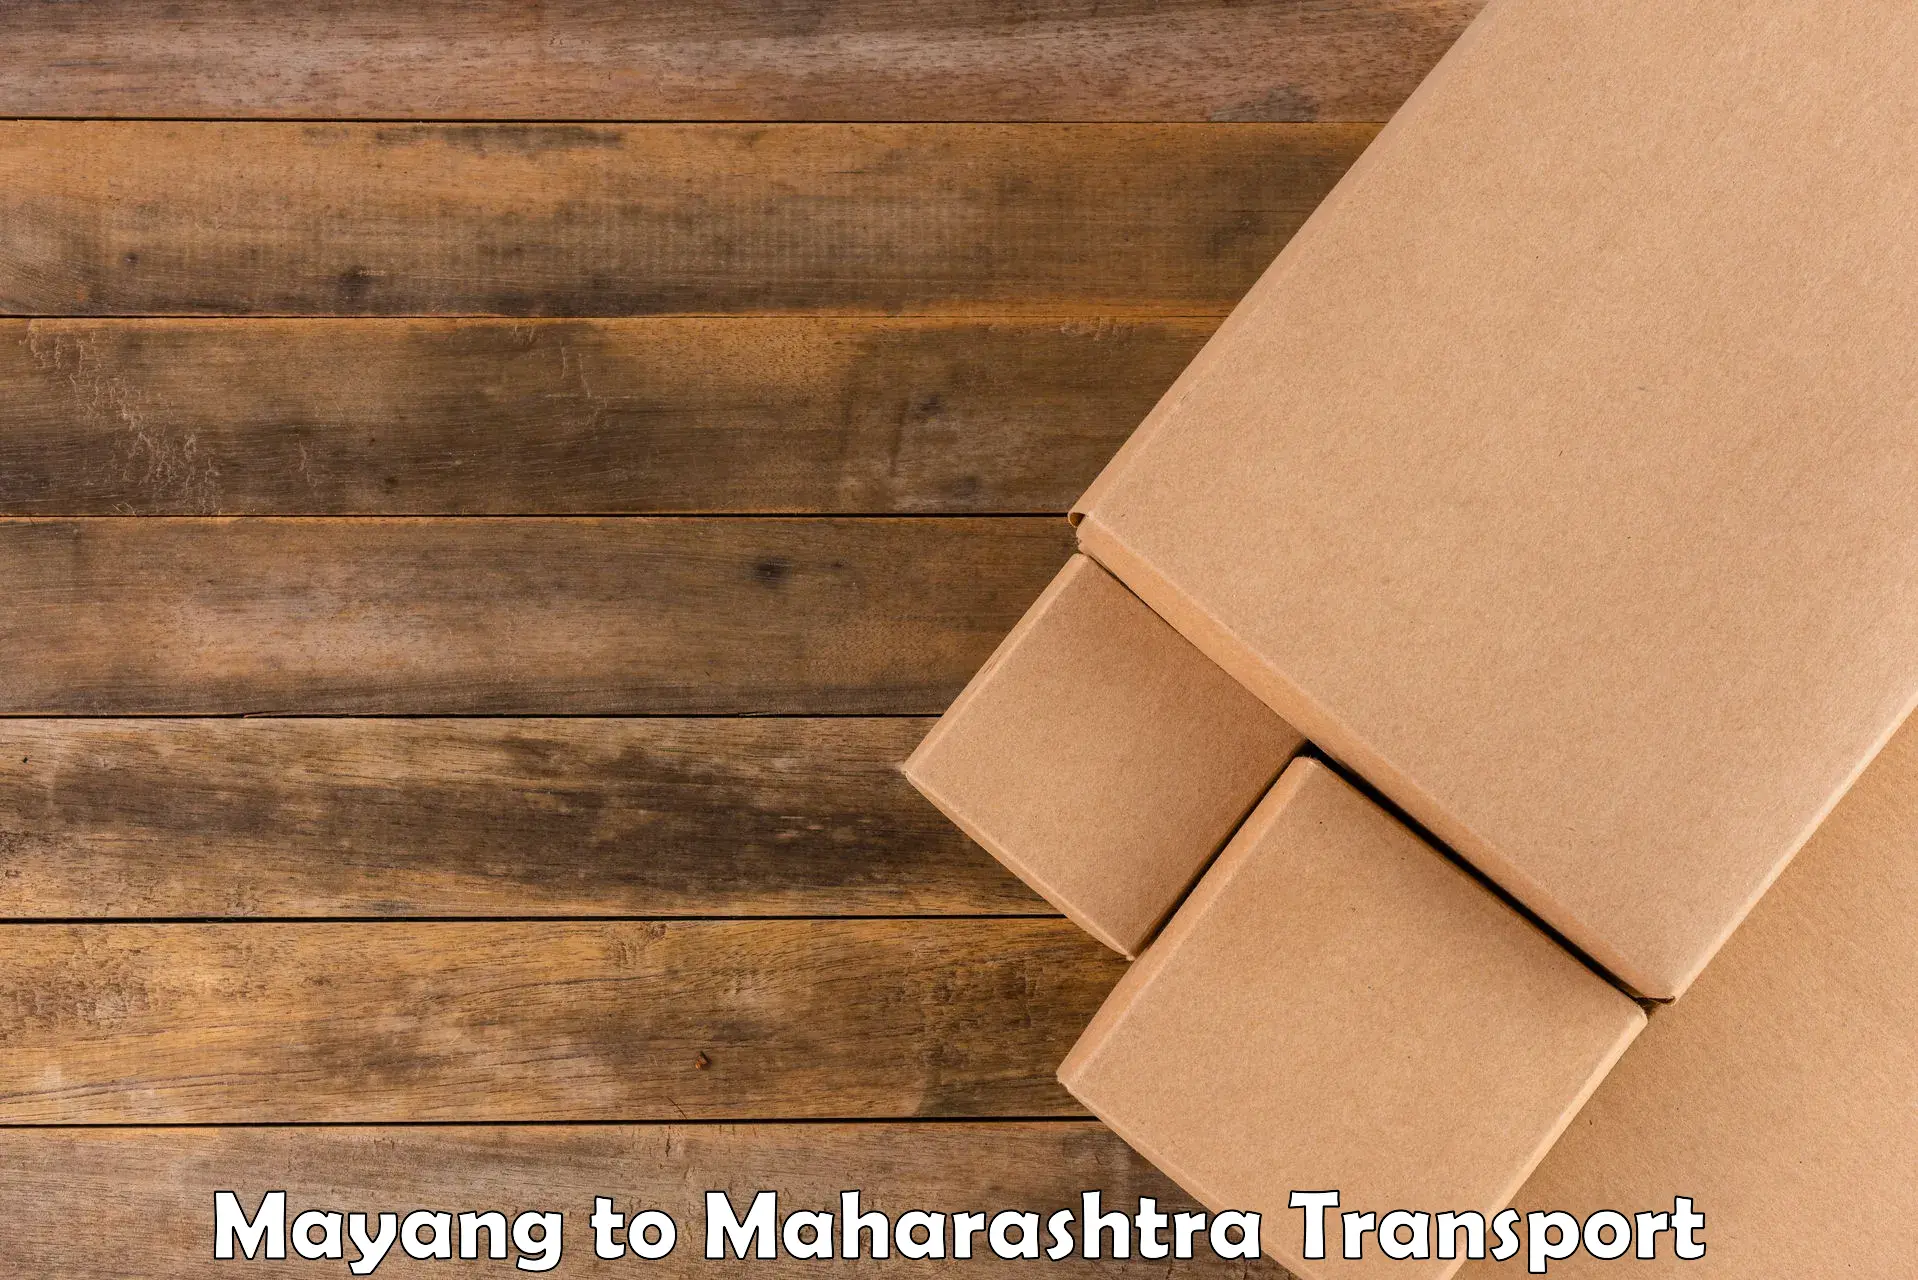 Delivery service Mayang to Mahabaleshwar